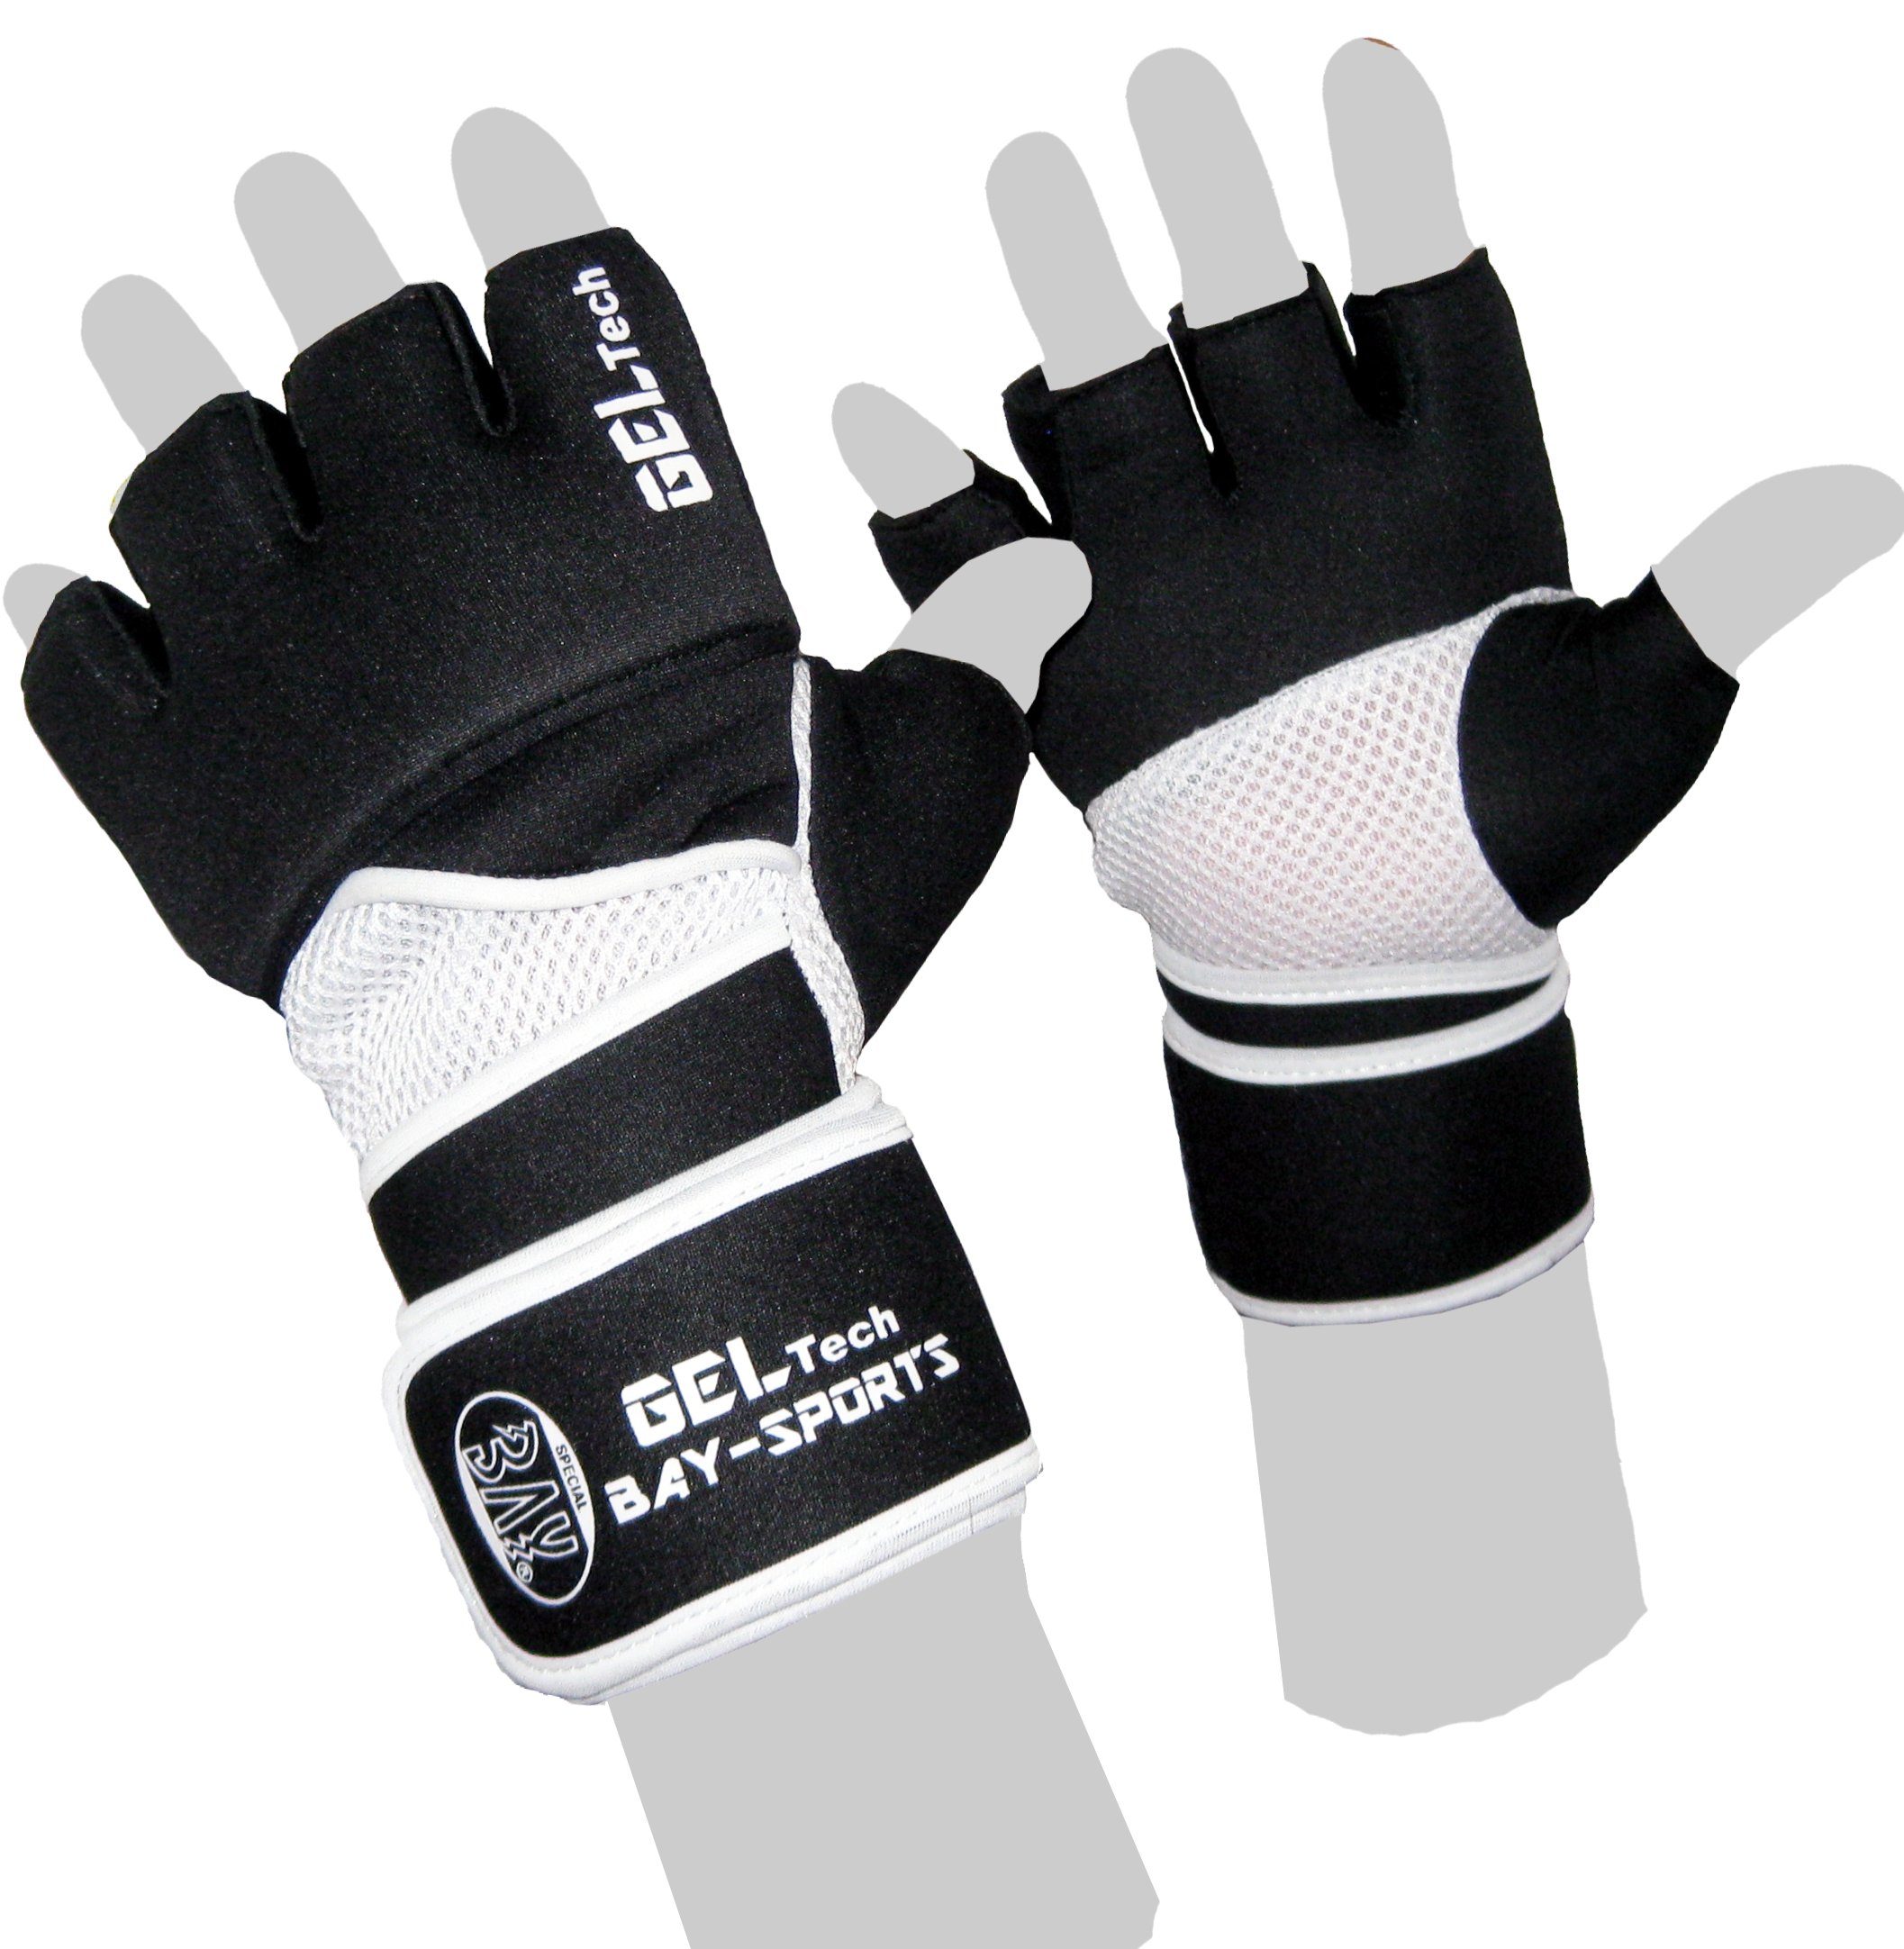 BAY-Sports Boxhandschuhe Winsome Handschutz XL XS Neopren Boxsack Sandsack, Erwachsene - und Handschuhe Kinder